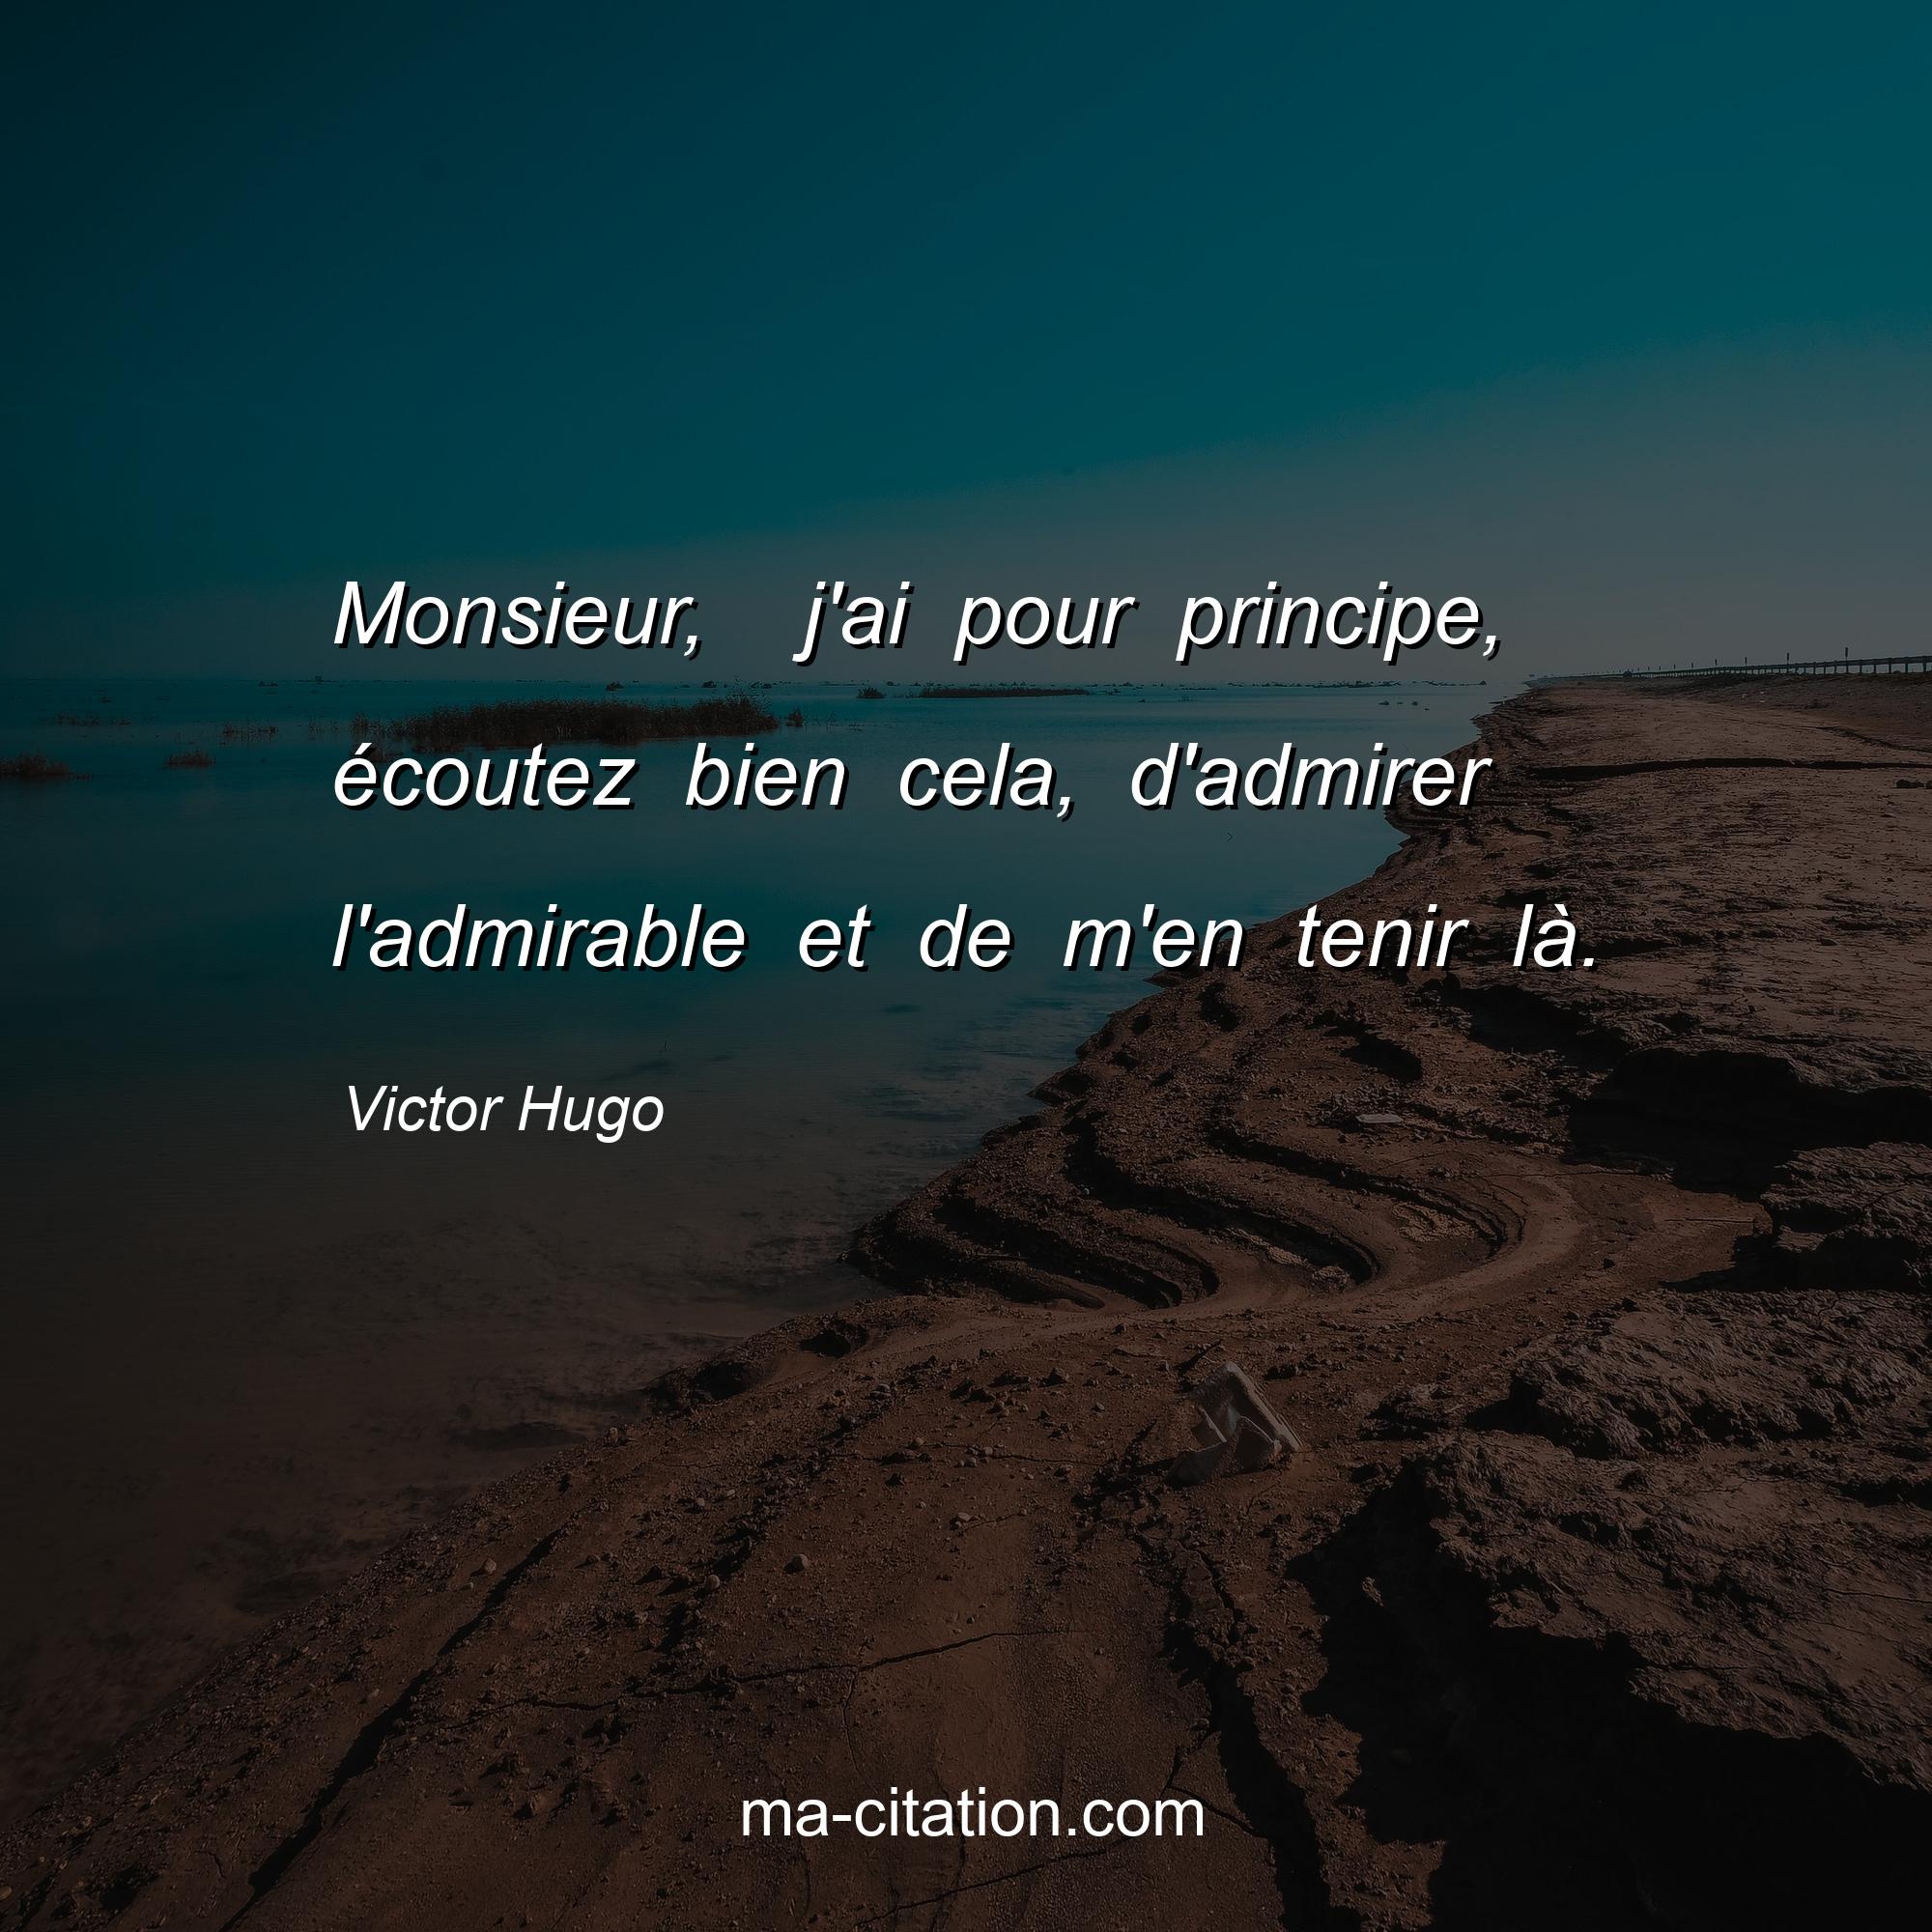 Victor Hugo : Monsieur,  j'ai pour principe, écoutez bien cela, d'admirer l'admirable et de m'en tenir là.